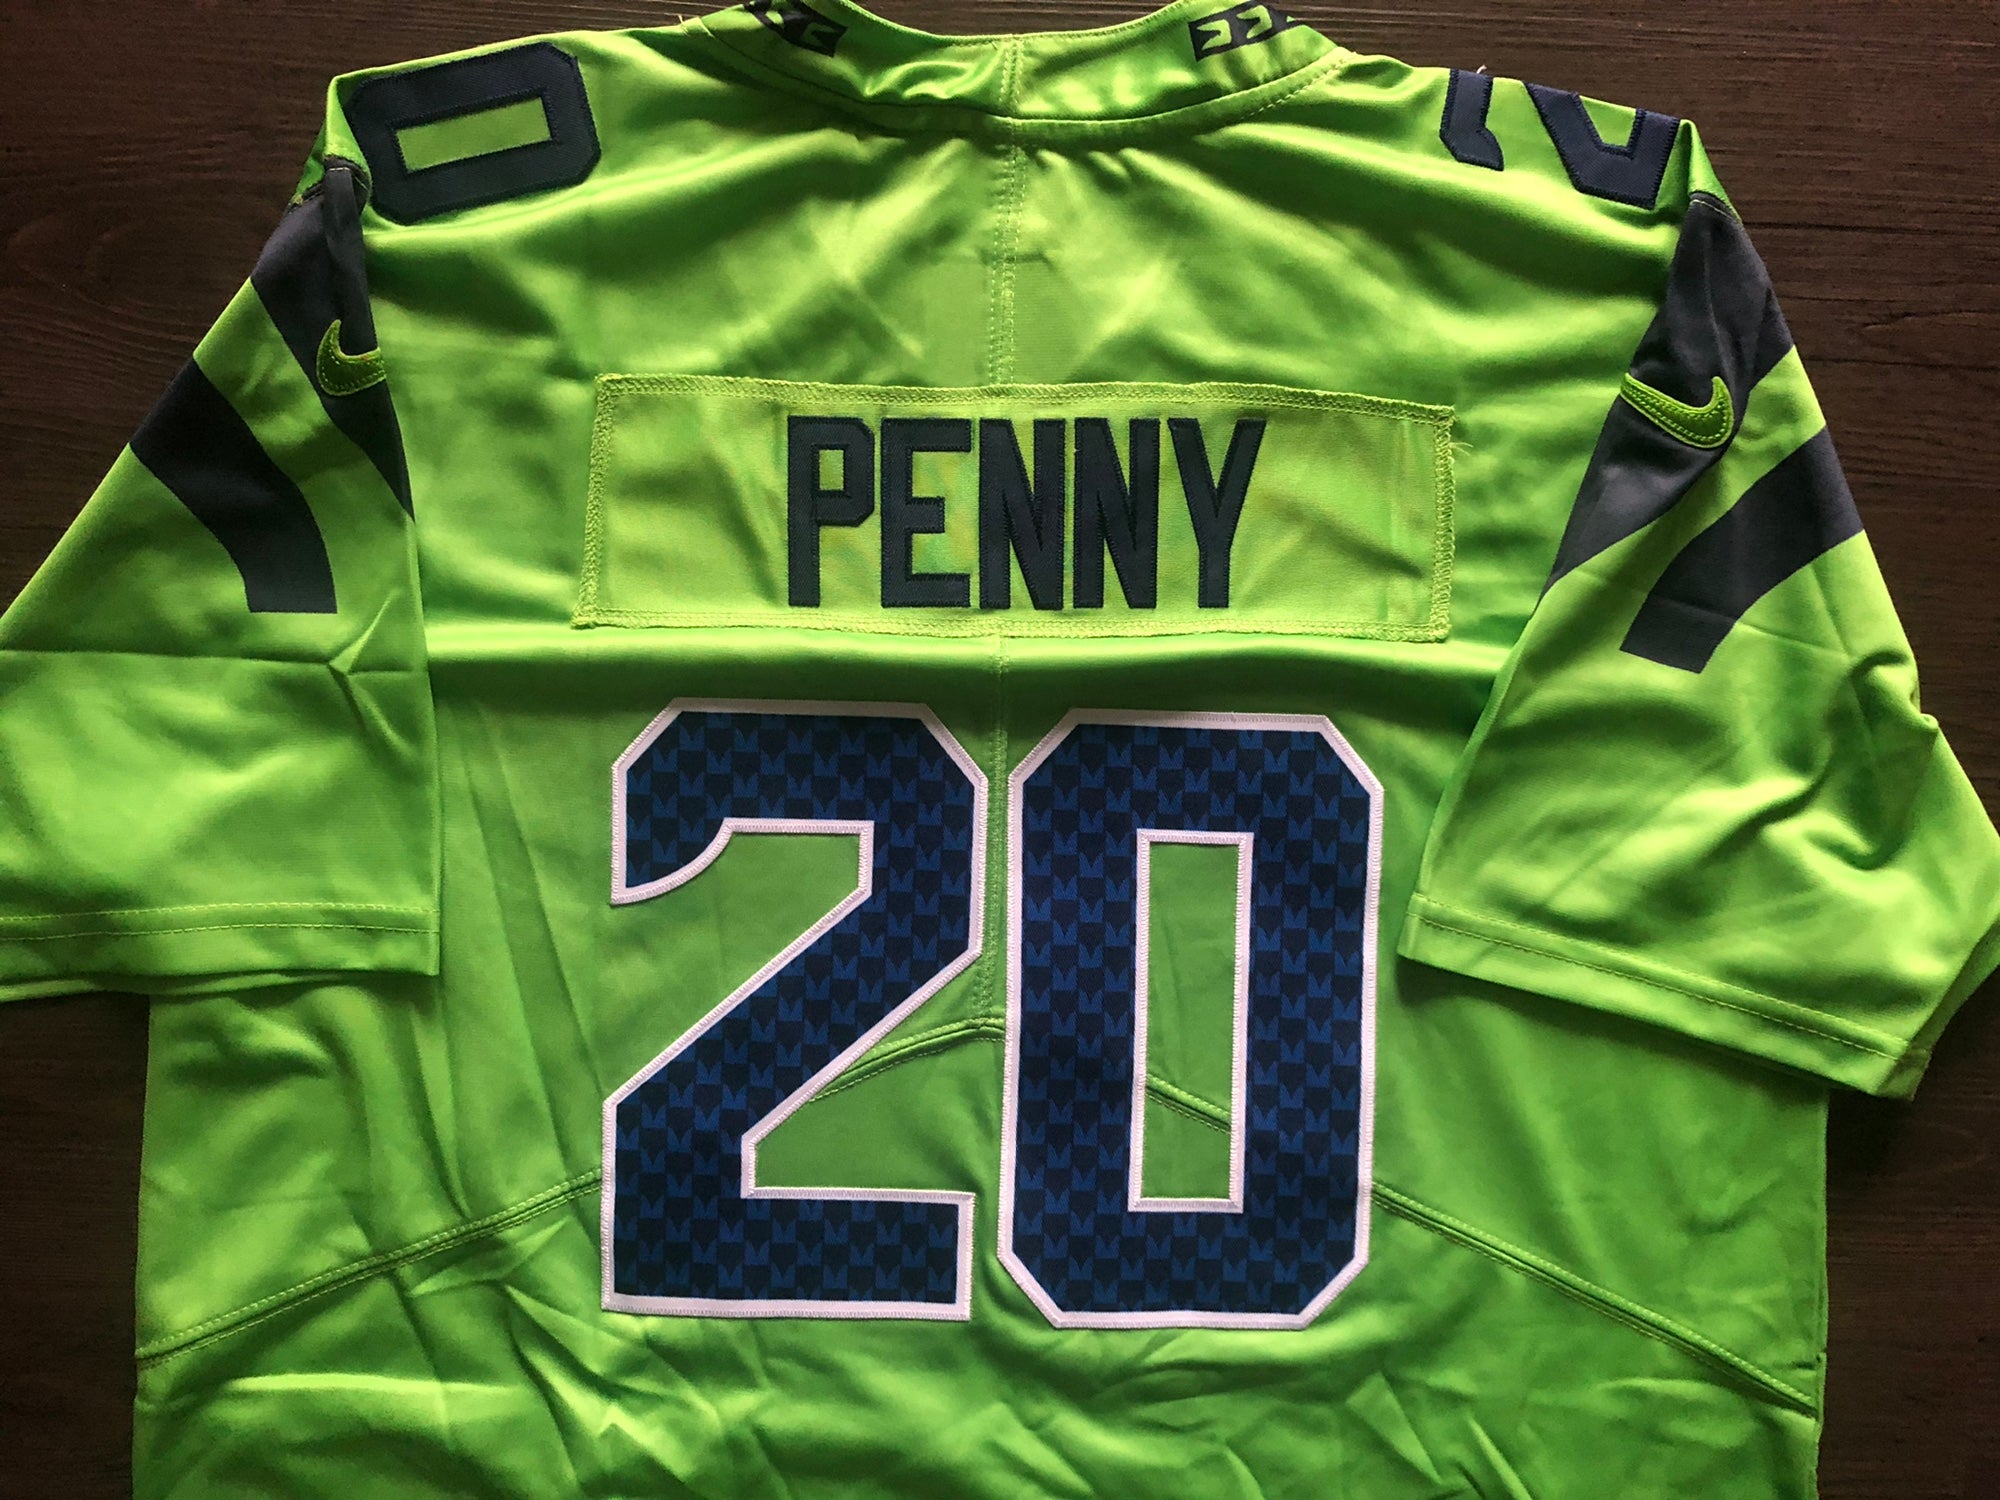 Seattle Seahawks NFL jersey R Penny